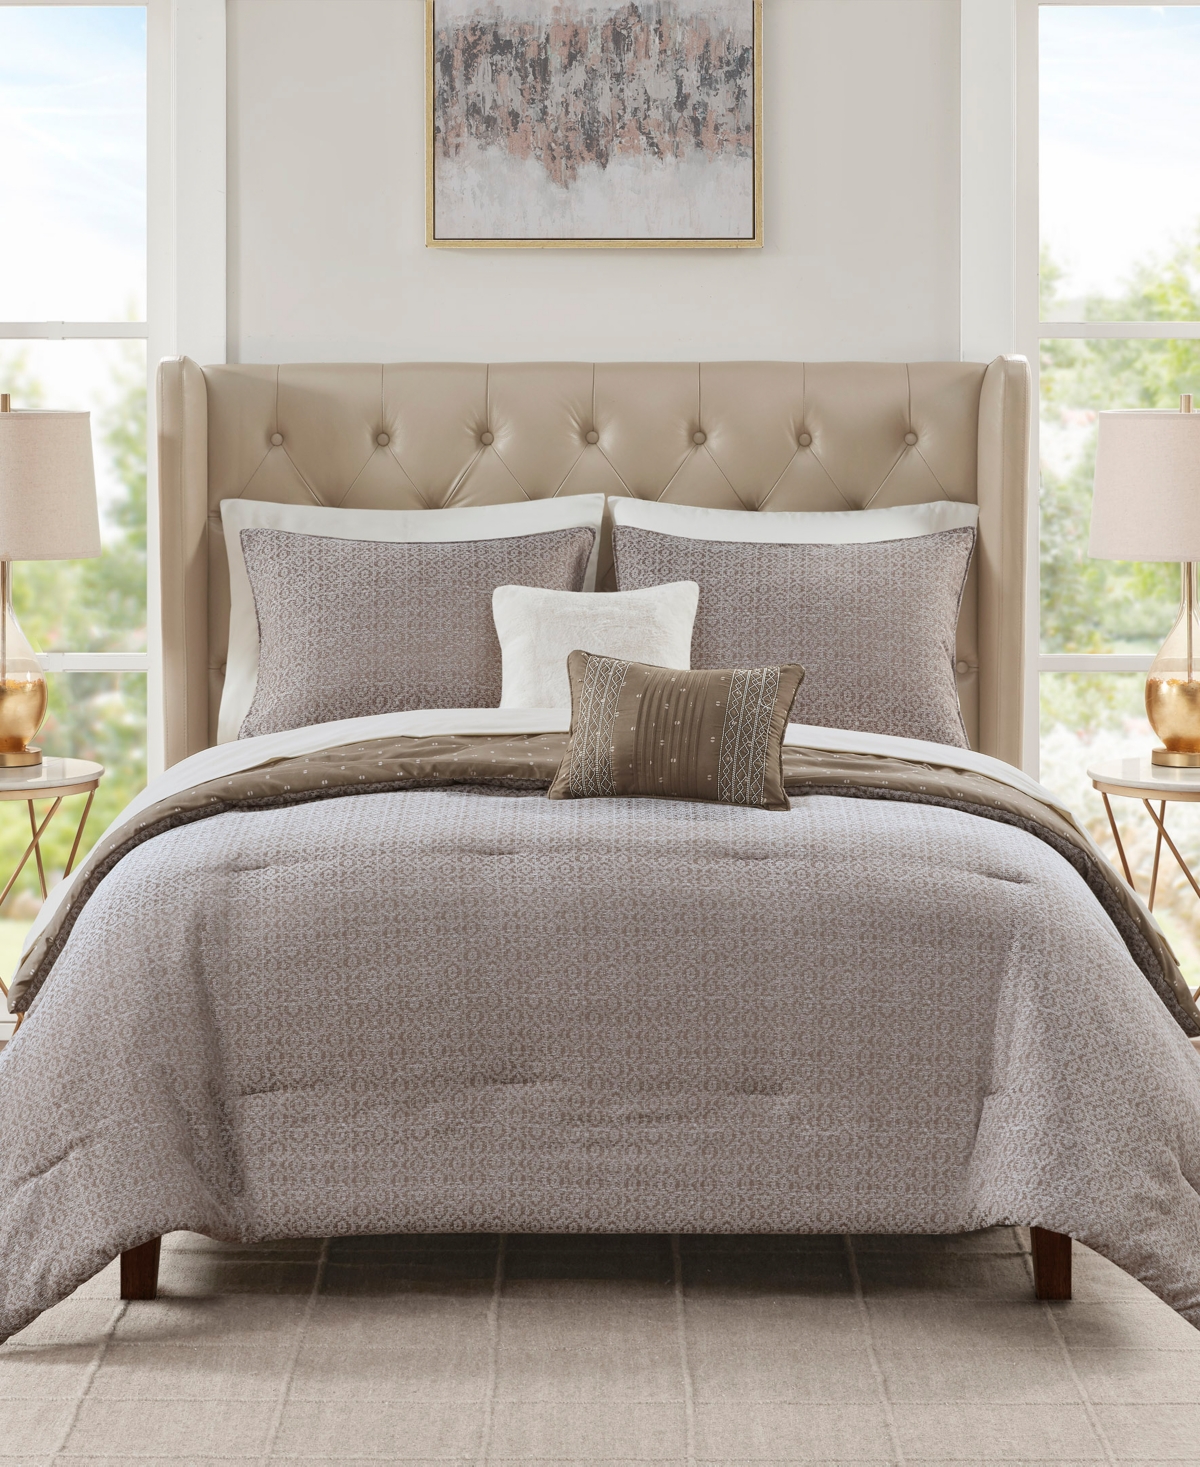 Jla Home Berkley 9-pc. Comforter Set, Queen, Created For Macy's In Brown